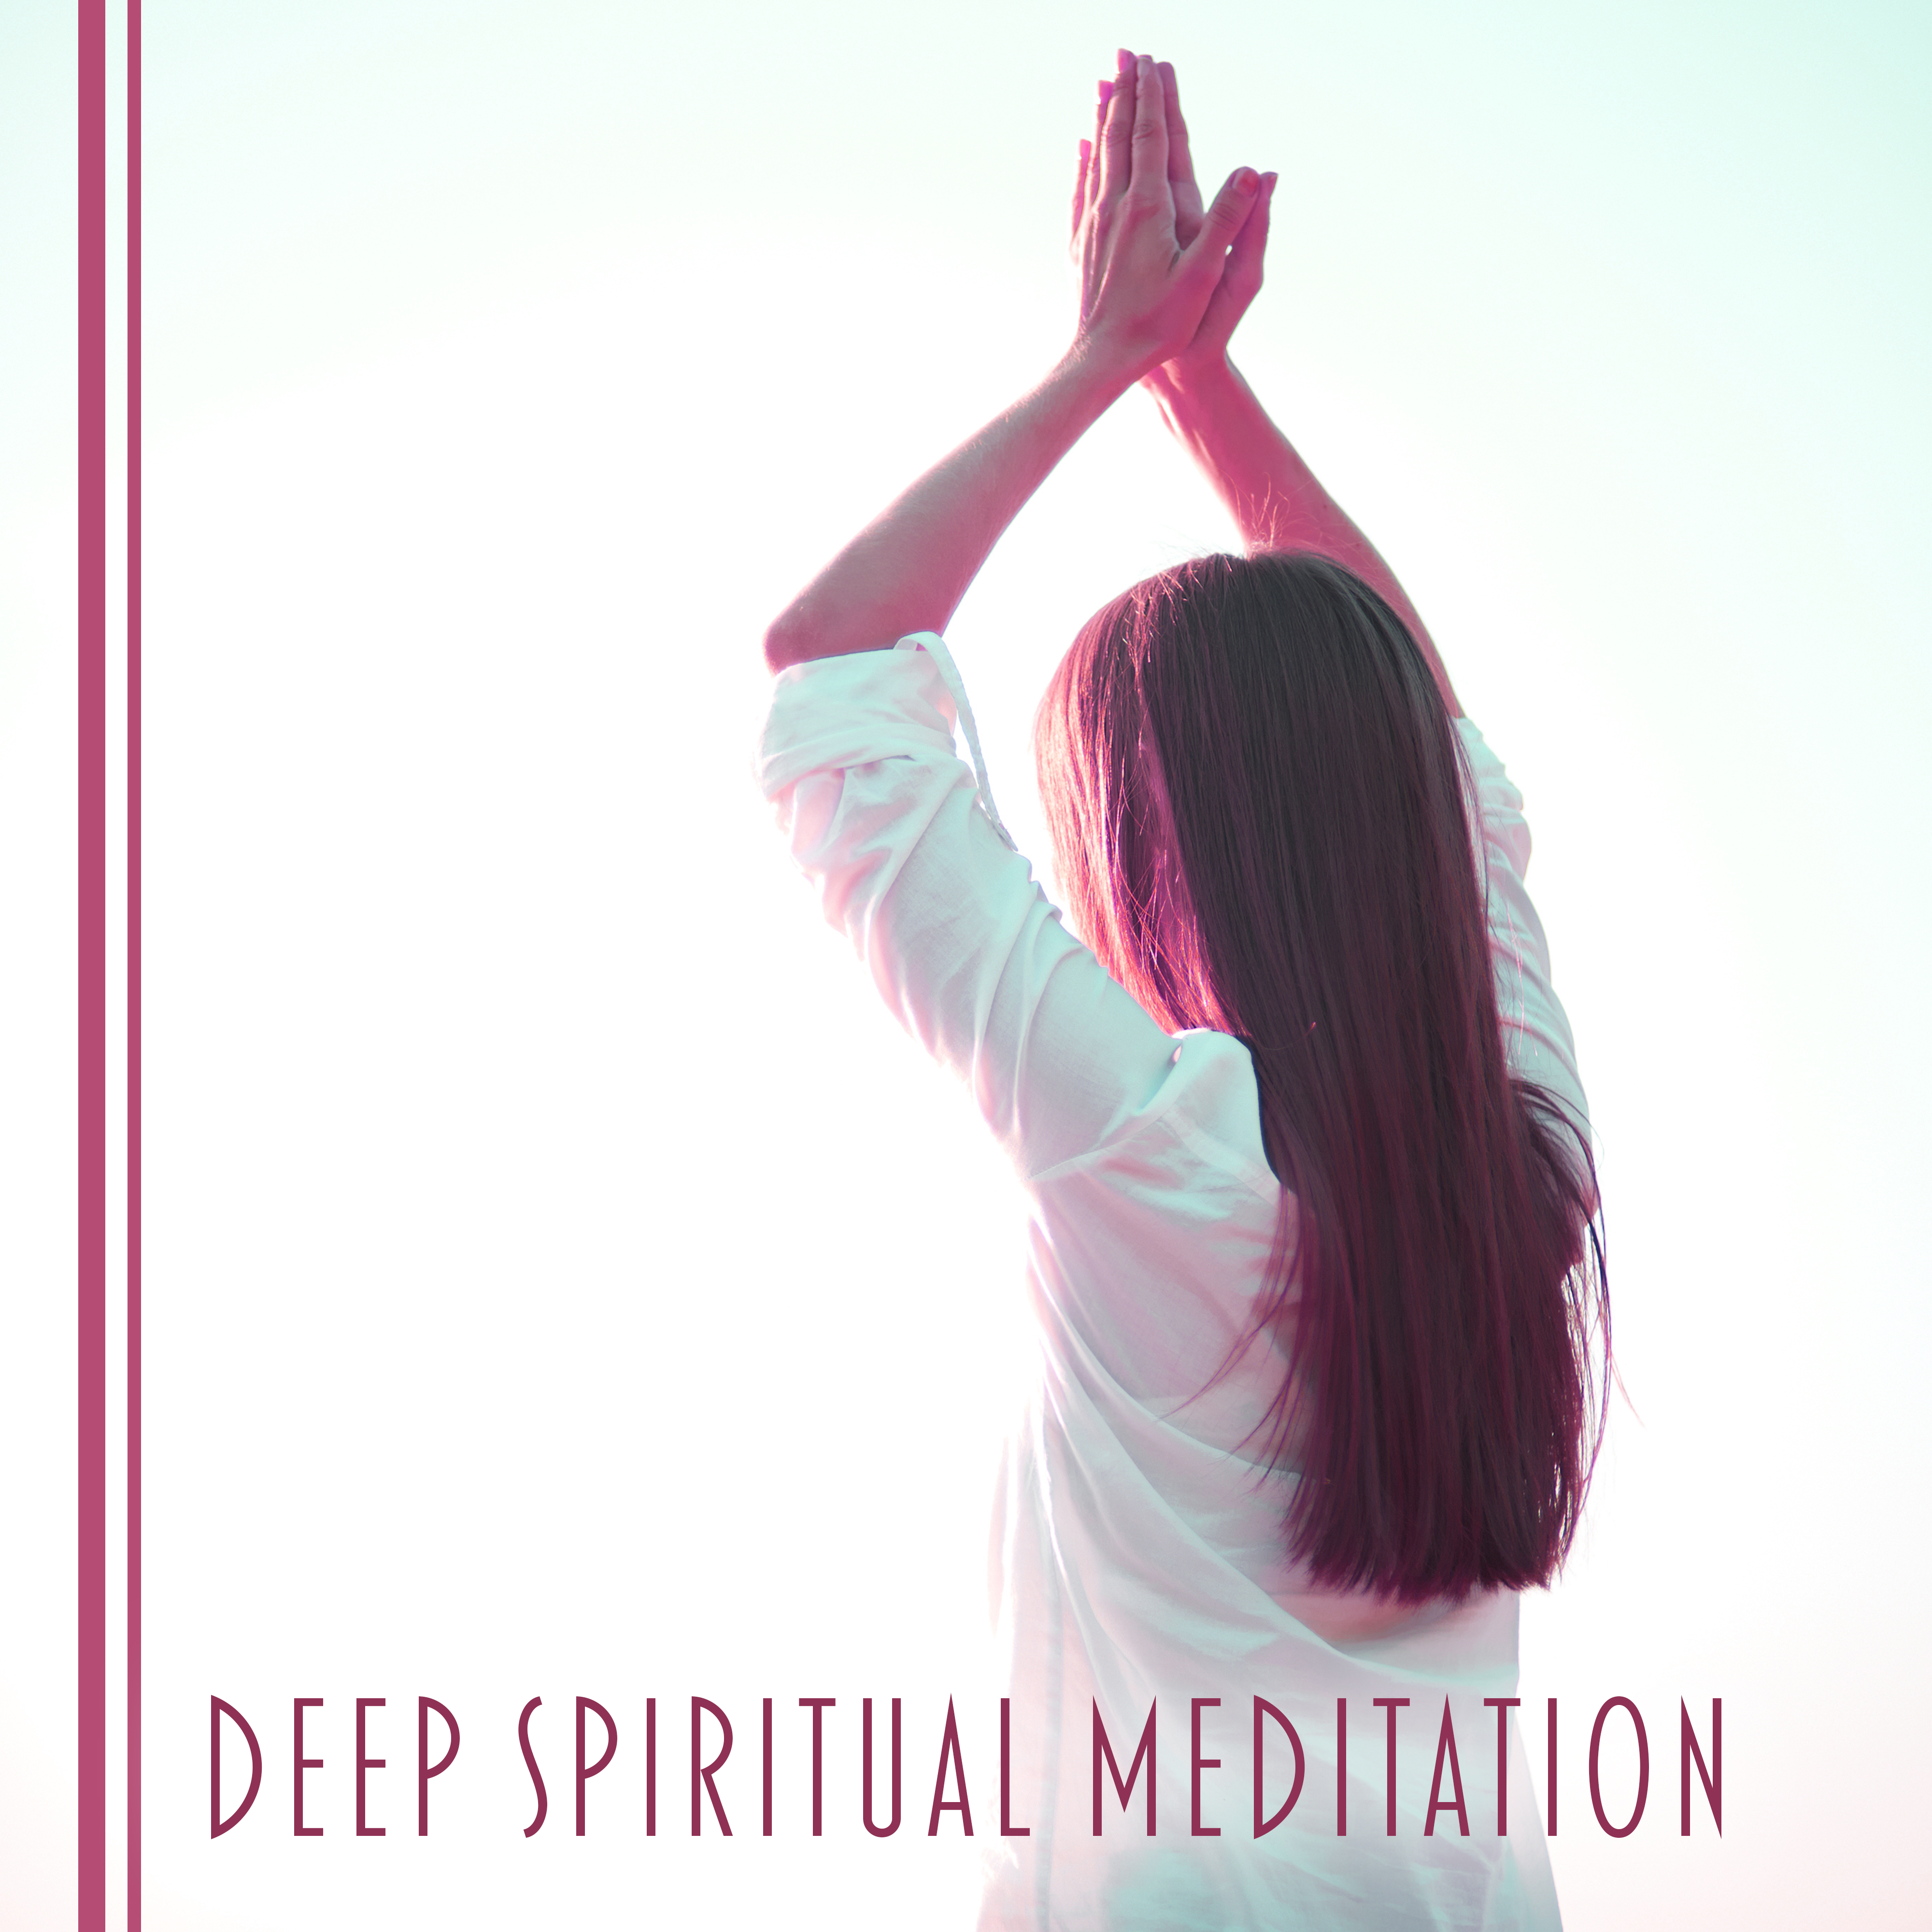 Deep Spiritual Meditation – Deep Relaxing Music, Spiritual Journey, Healing Meditation, Tranquility